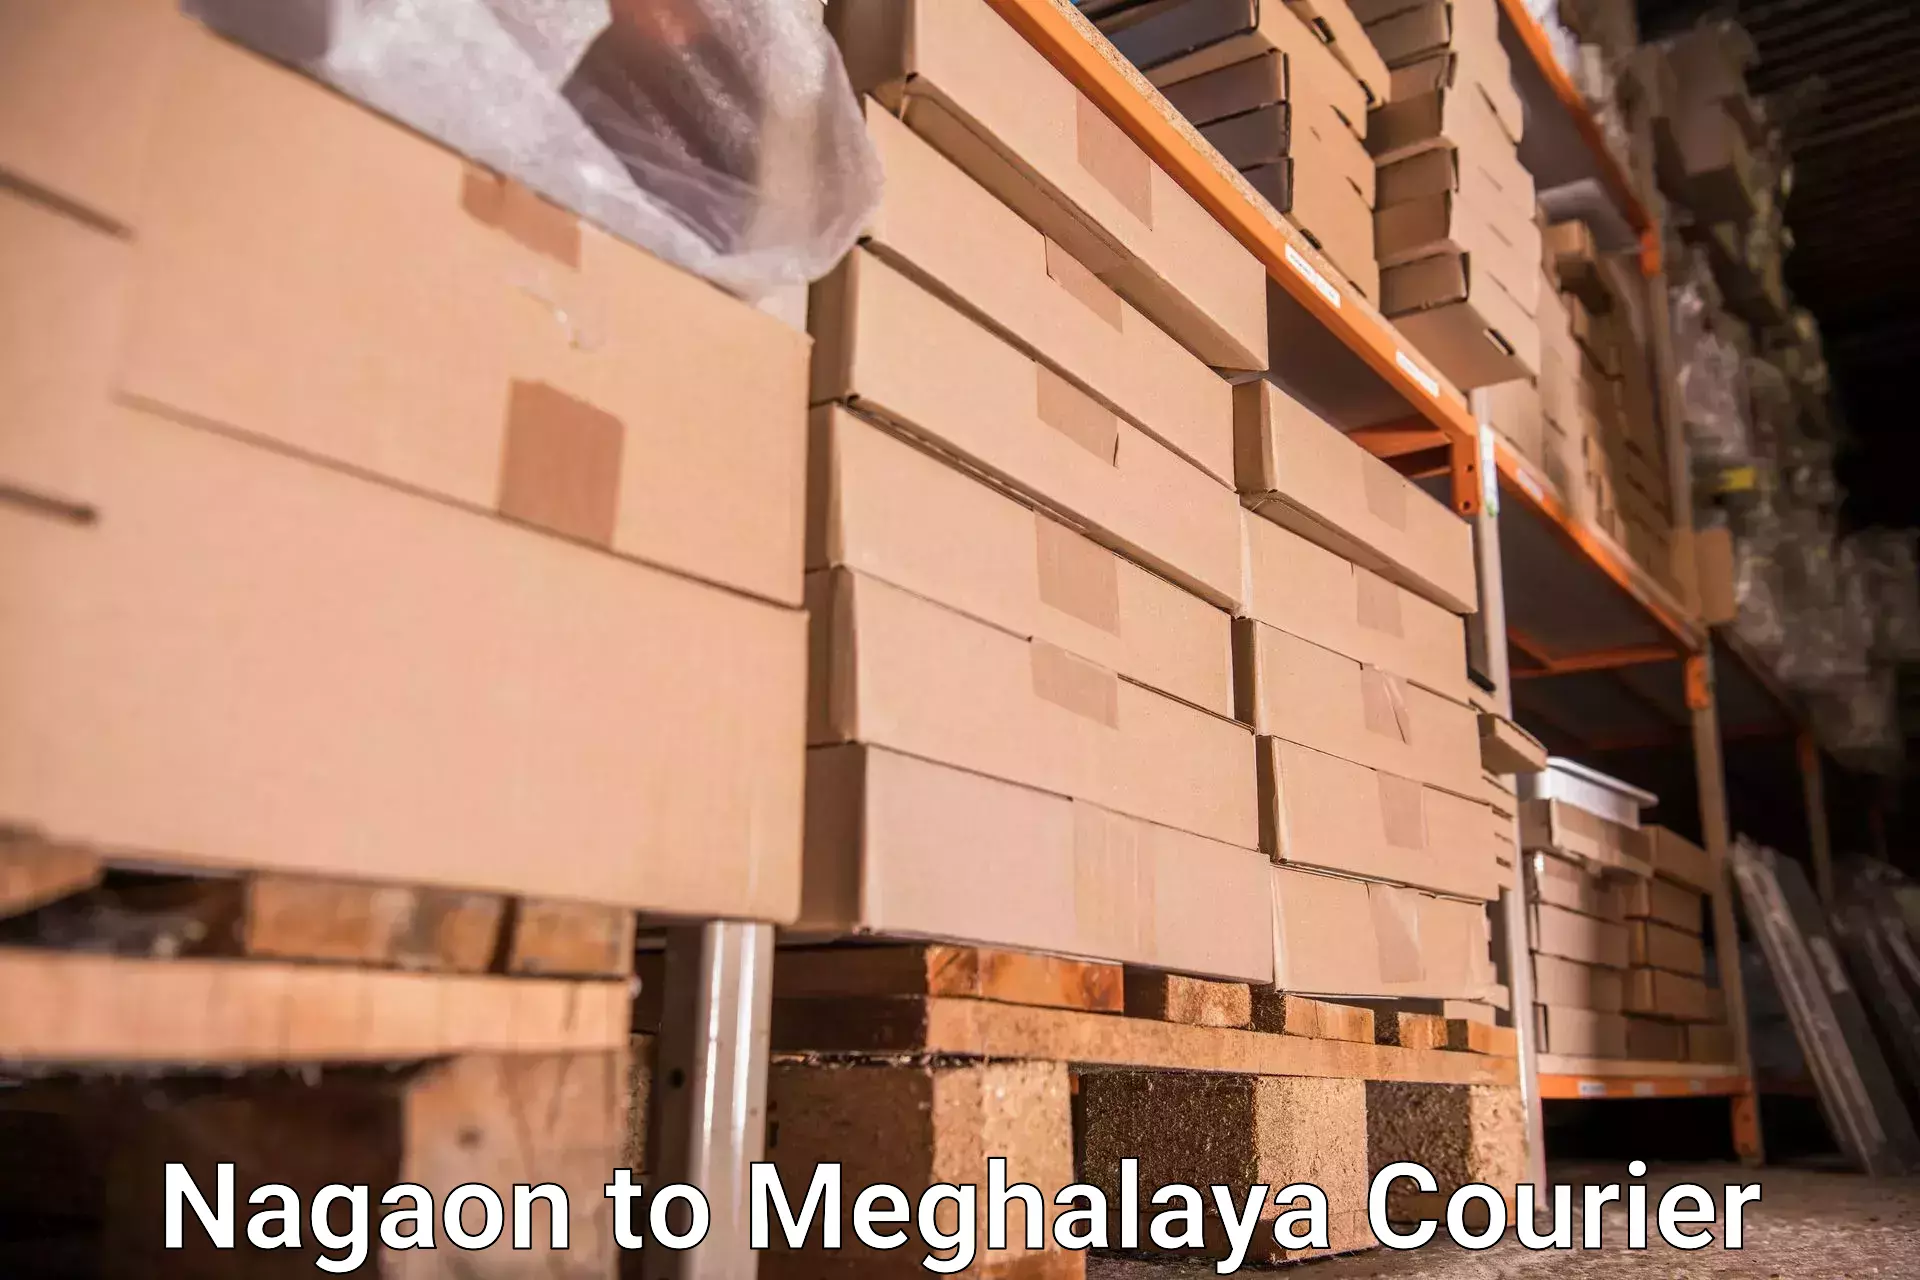 High-quality baggage shipment Nagaon to Shillong